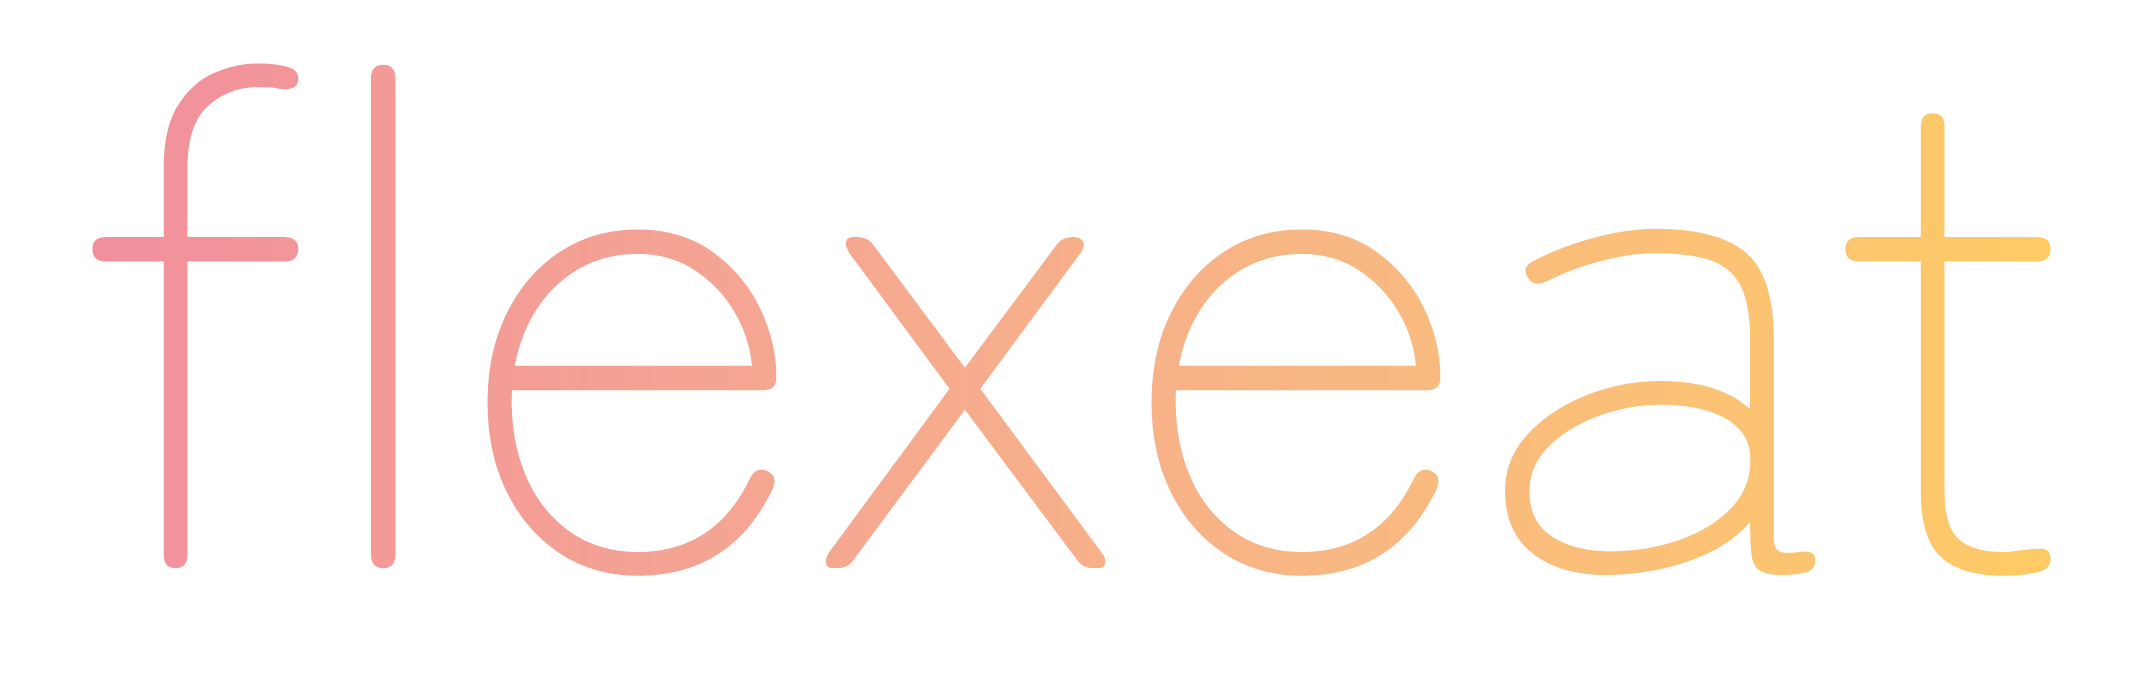 Flexeat, livraison plats végétariens Annecy et Aix-Les-Bains